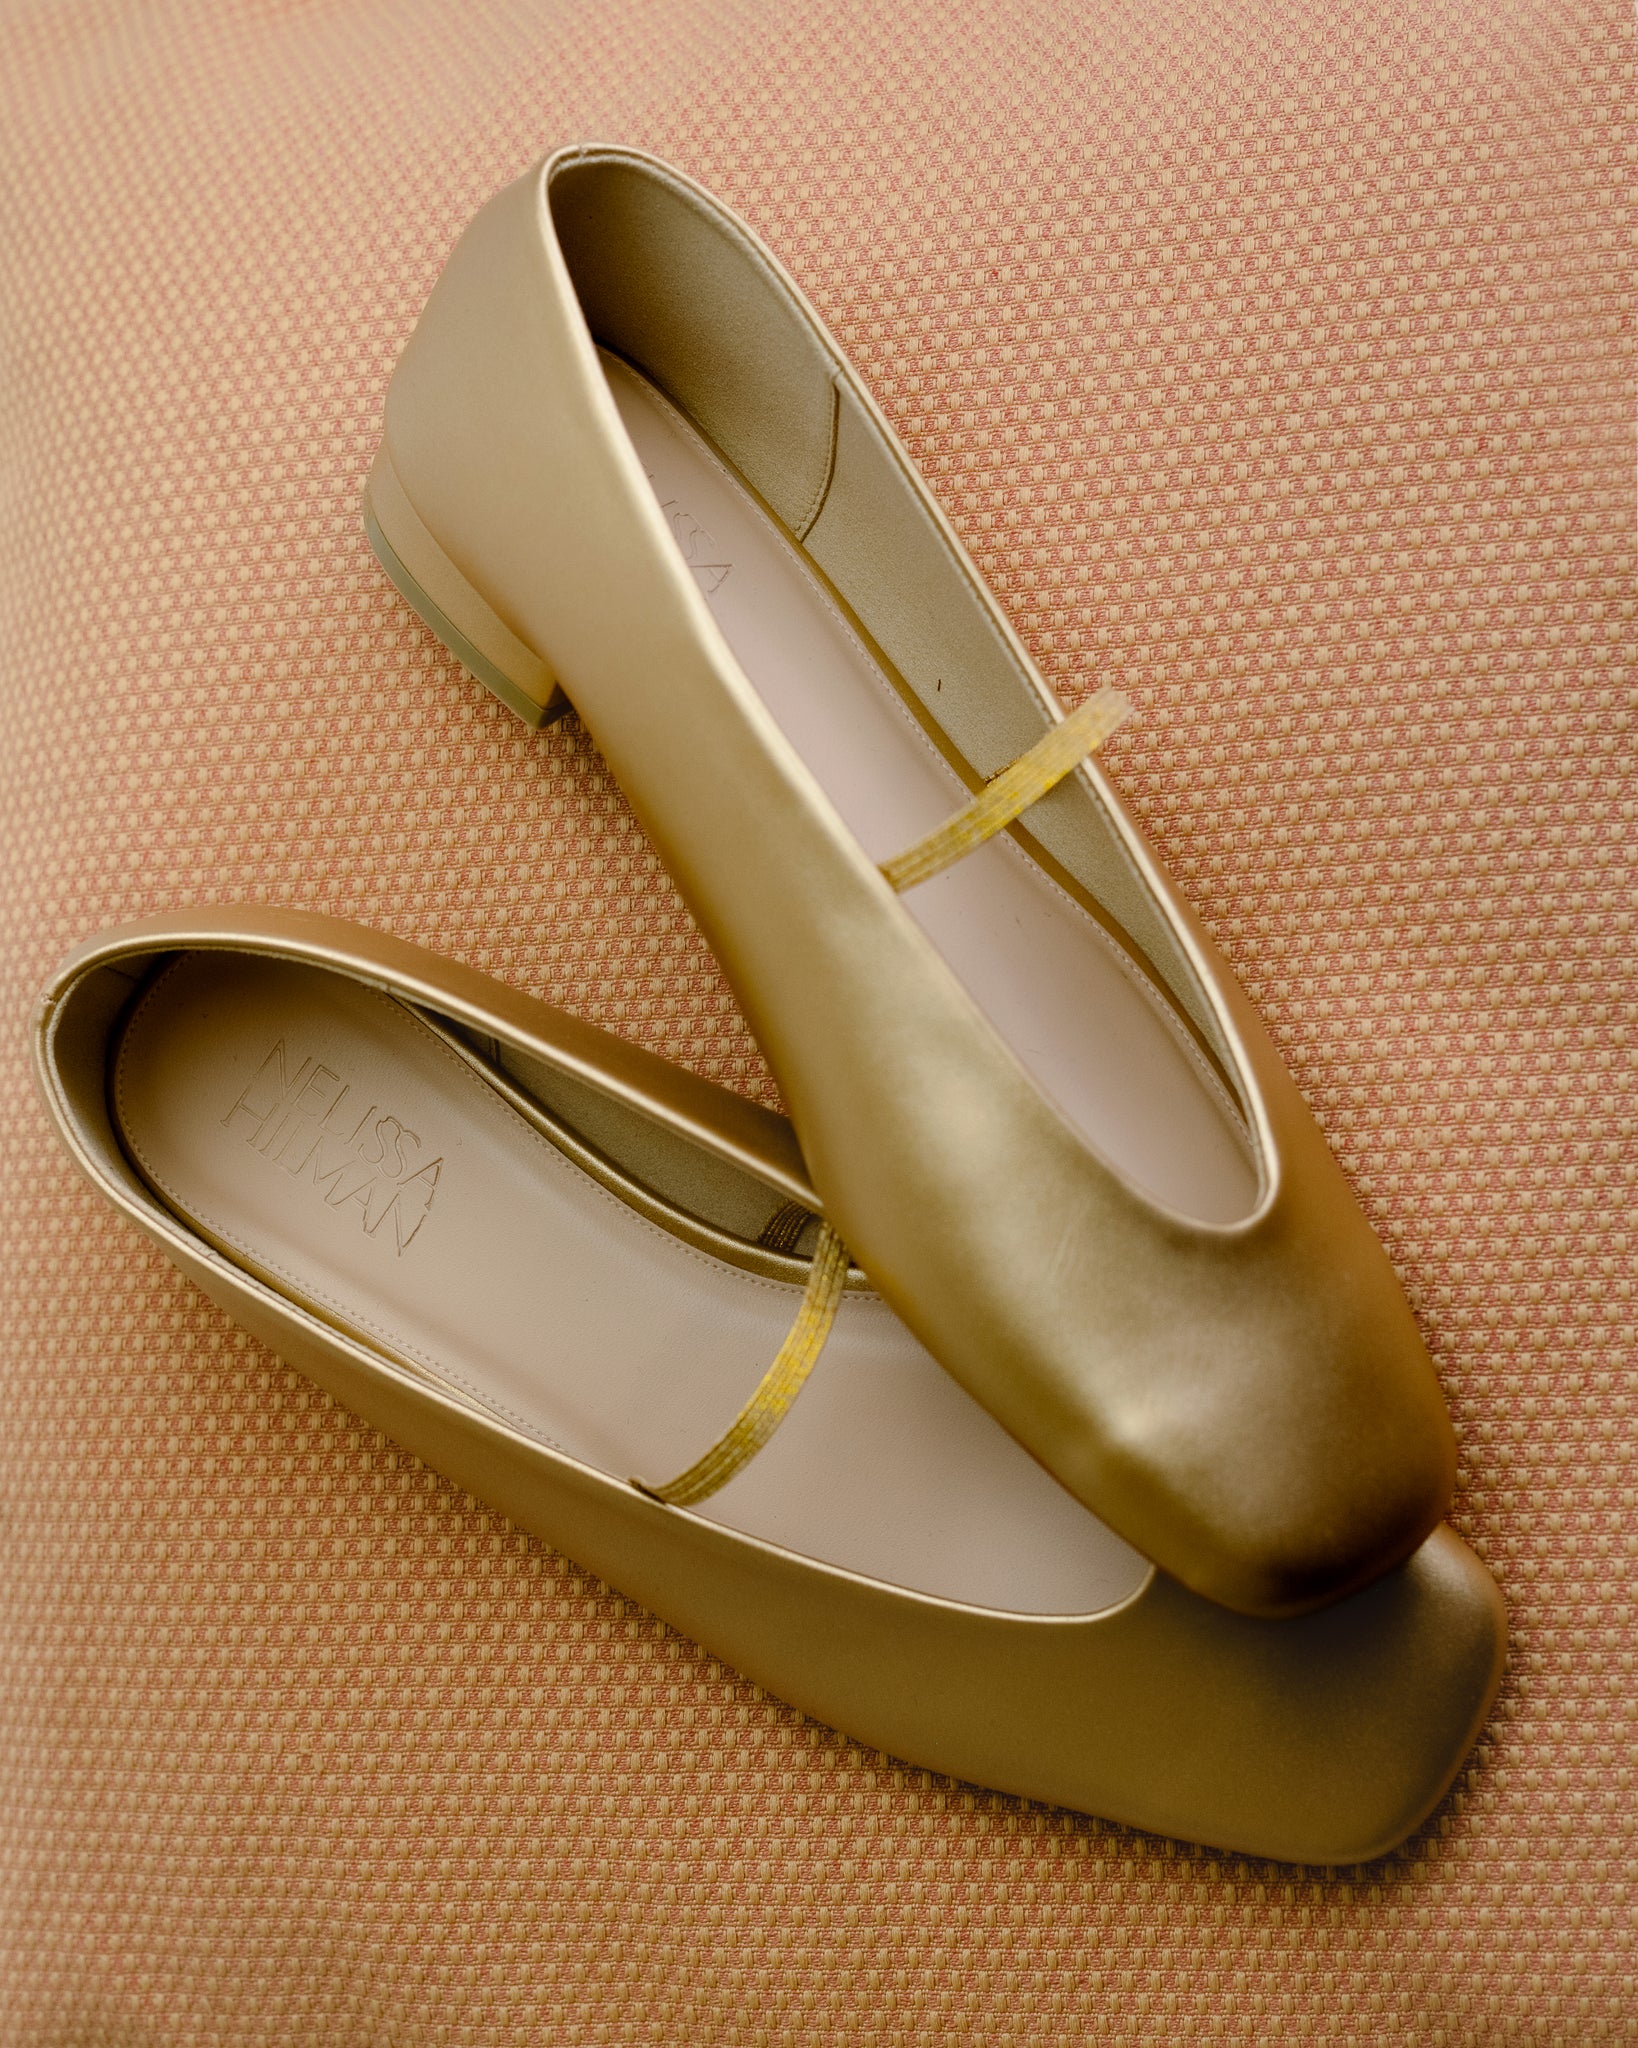 Debi Square Toe Loafers (Gold)